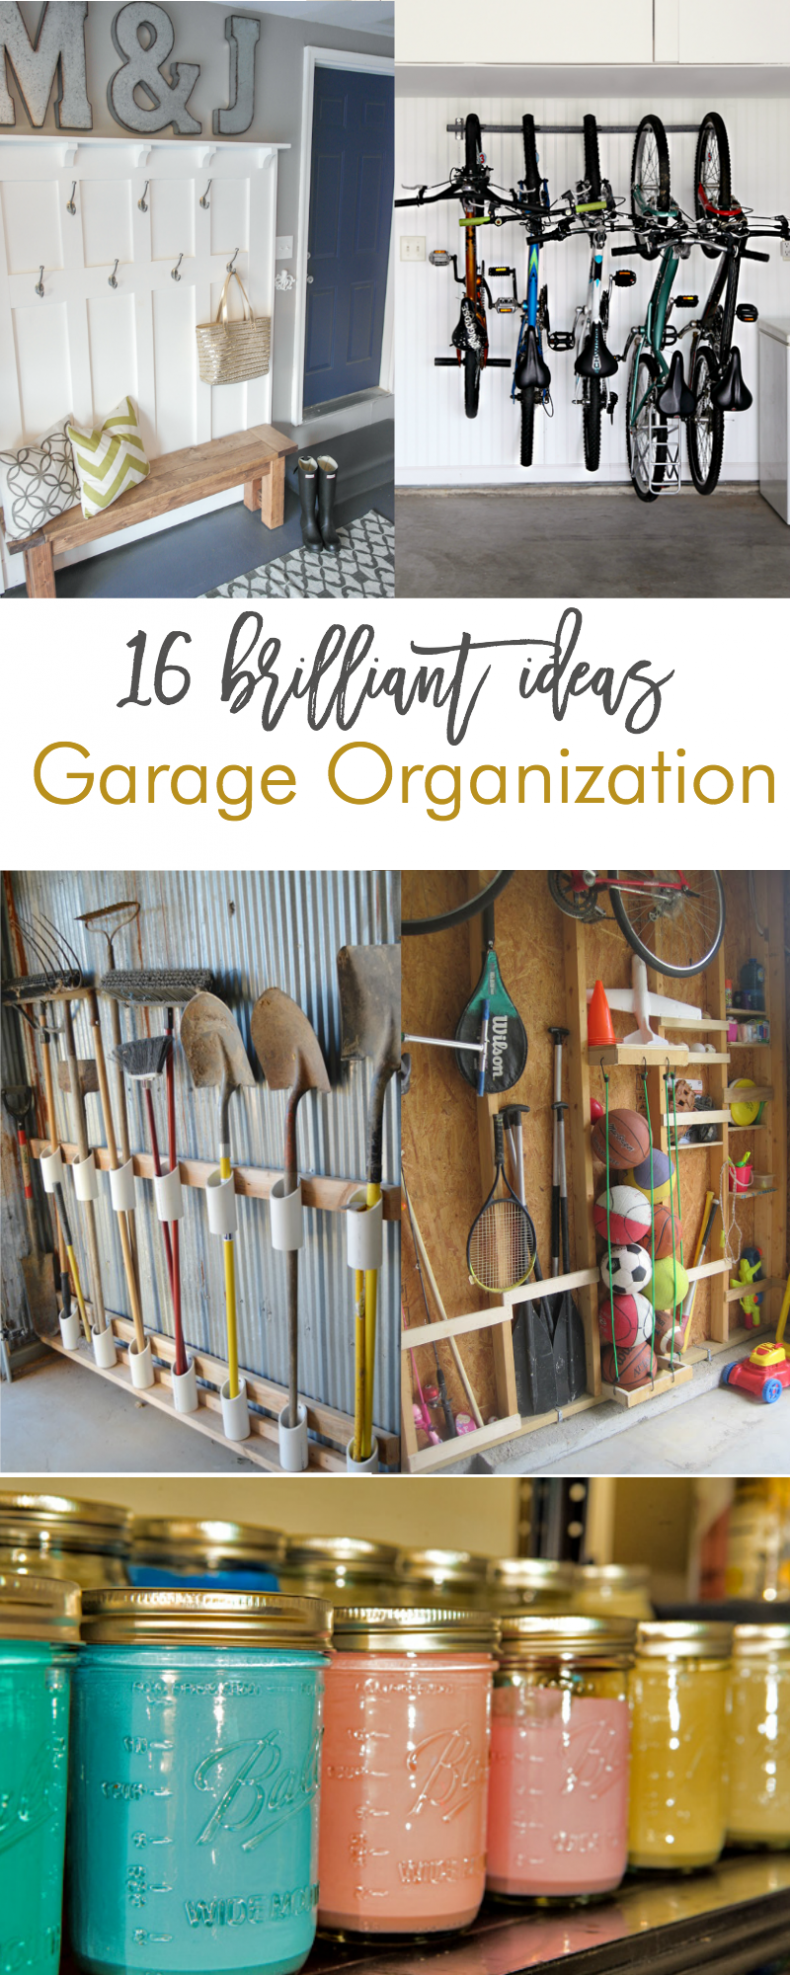 16 brilliant garage organization ideas. Love these!